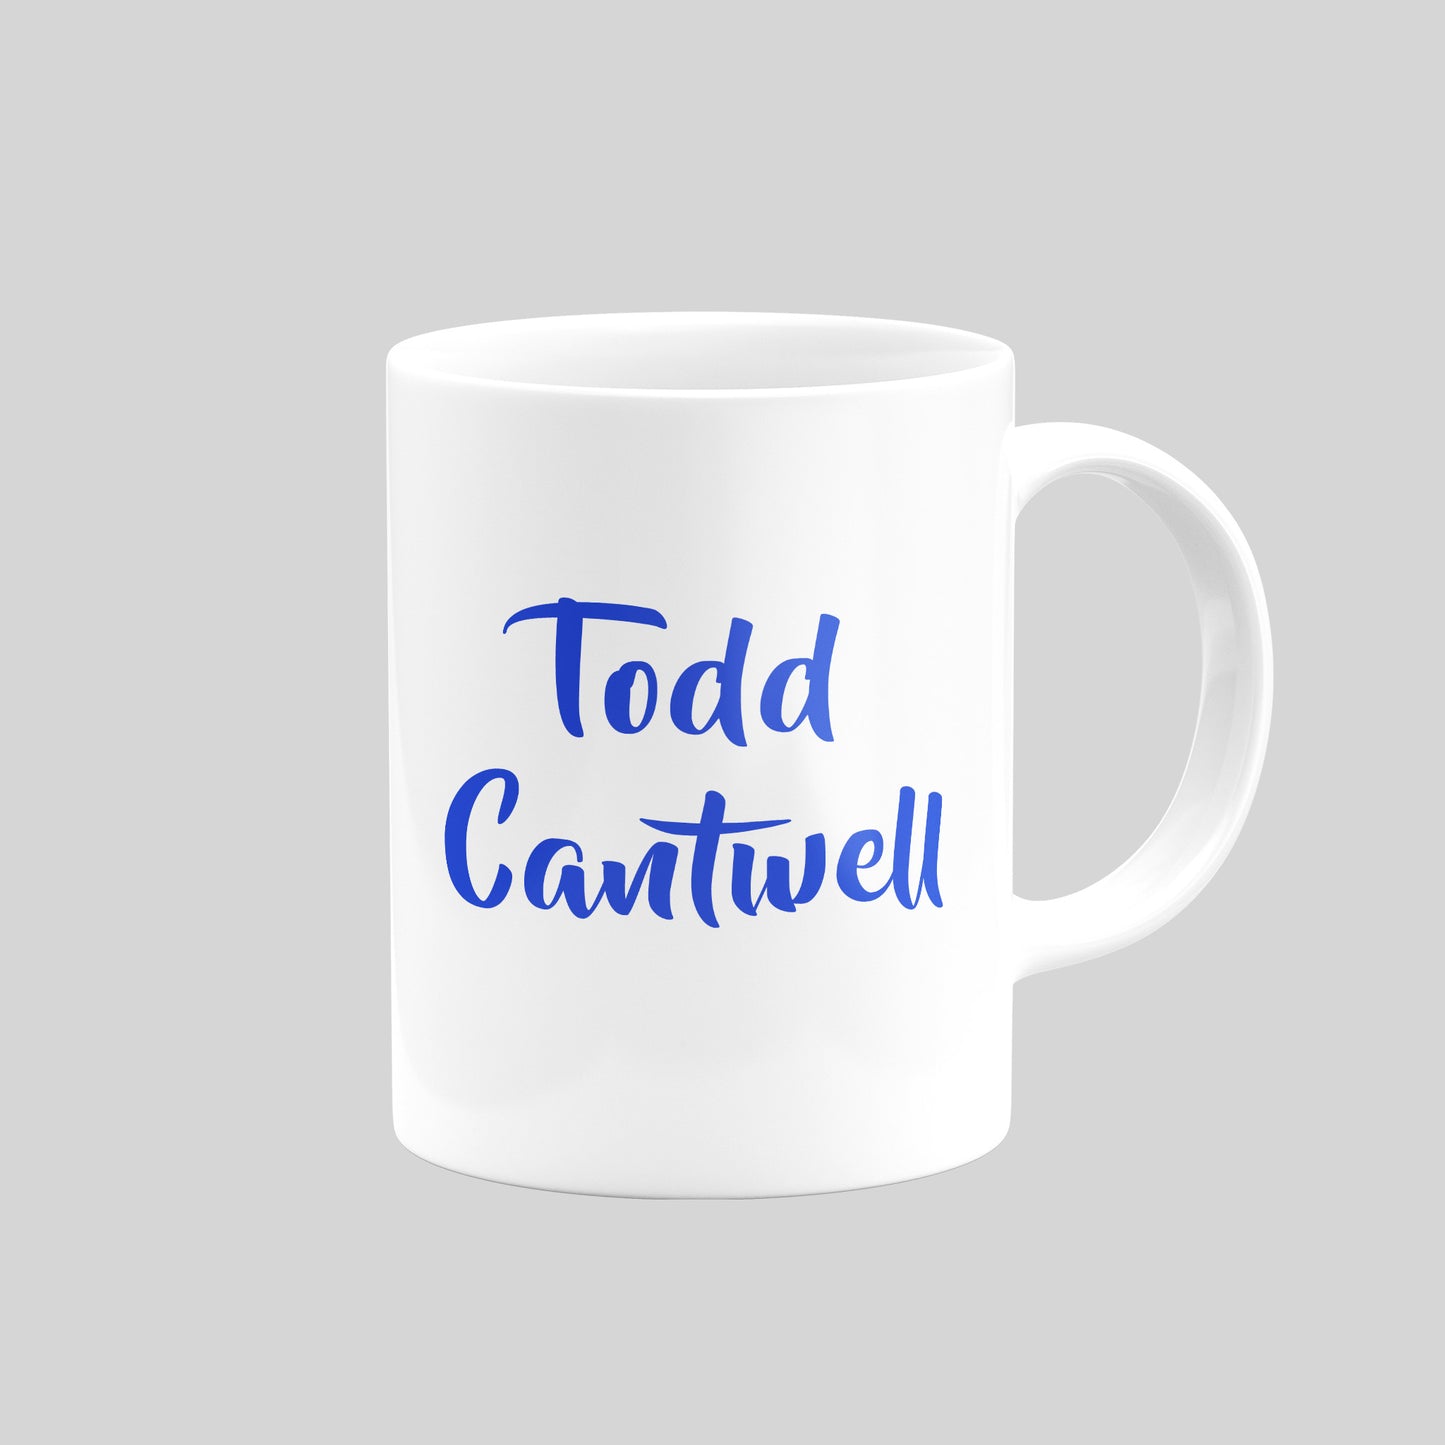 Todd Cantwell Mug